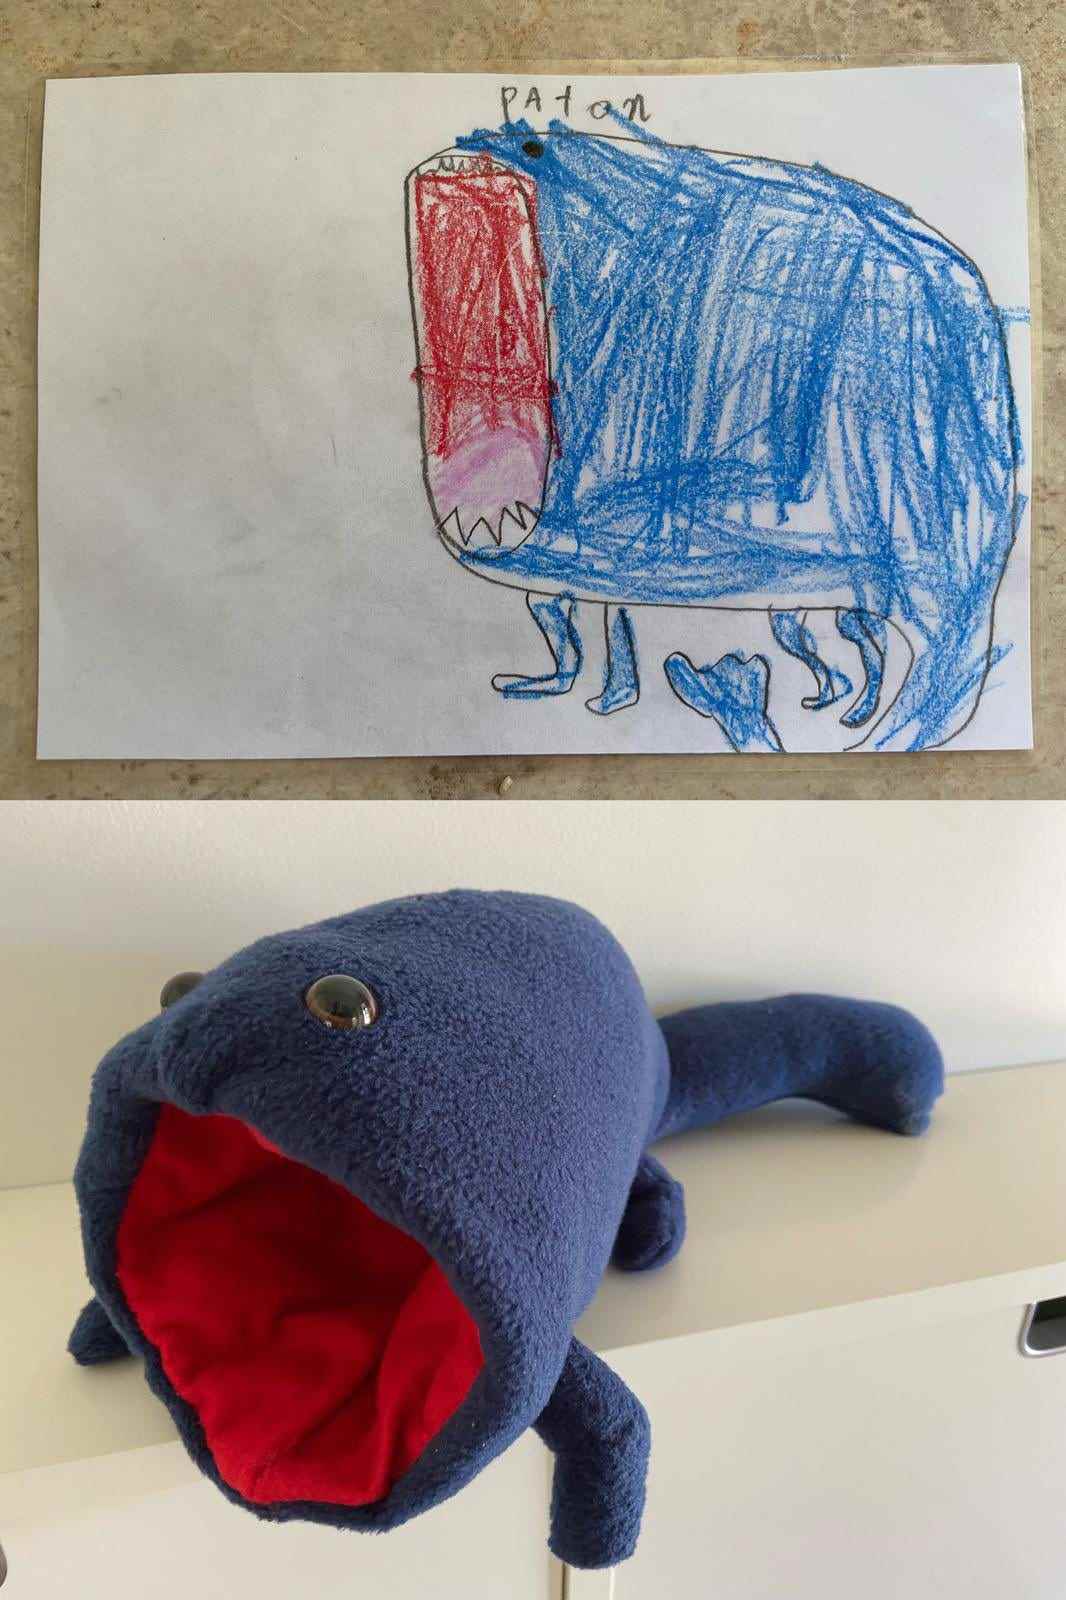 Eine Zeichnung eines Monsters und das Monster, das zu einem Spielzeug gemacht wurde, das genau so aussieht